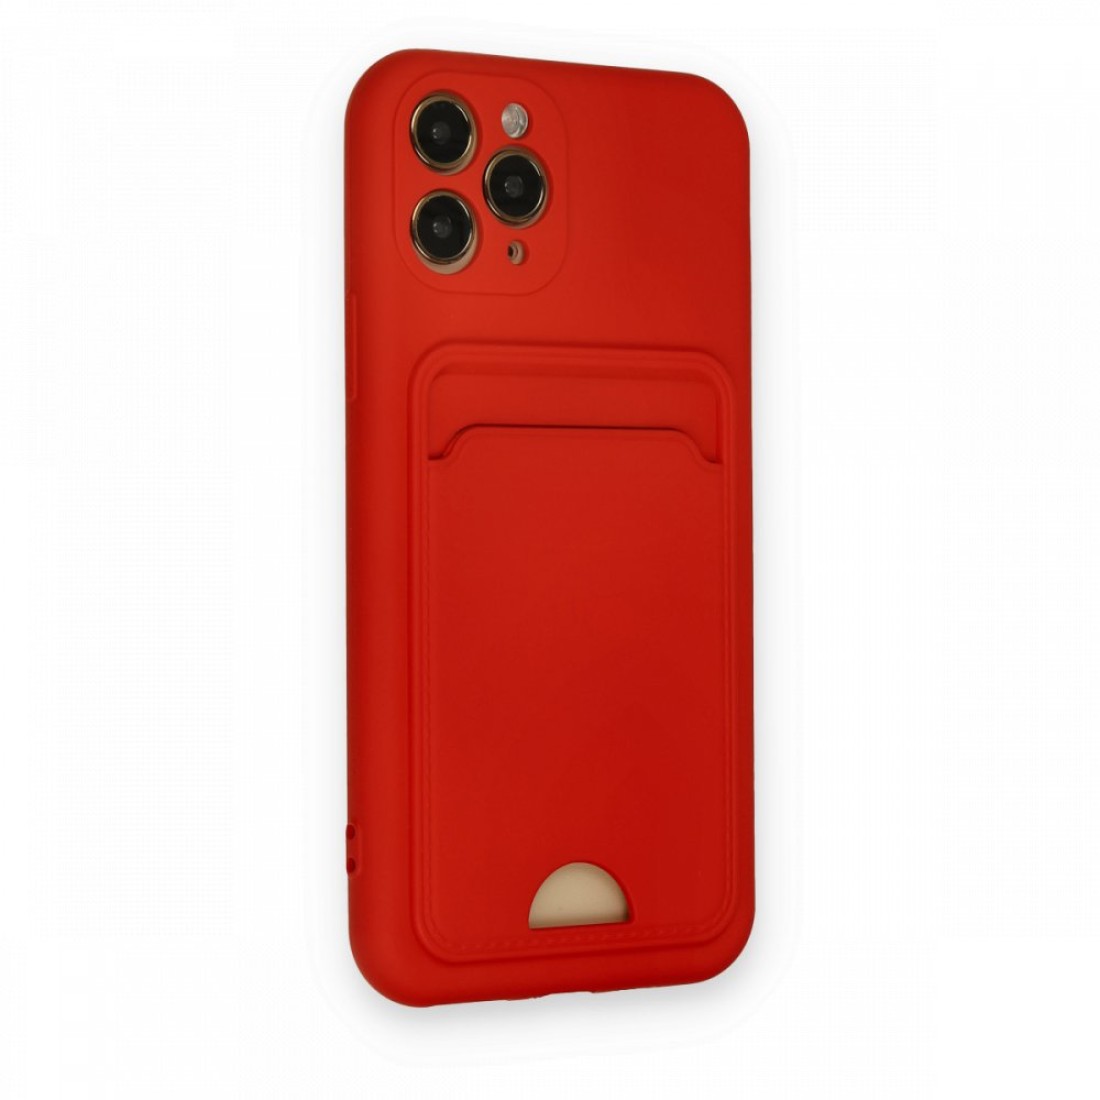 Apple iPhone 11 Pro Kılıf Kelvin Kartvizitli Silikon - Kırmızı